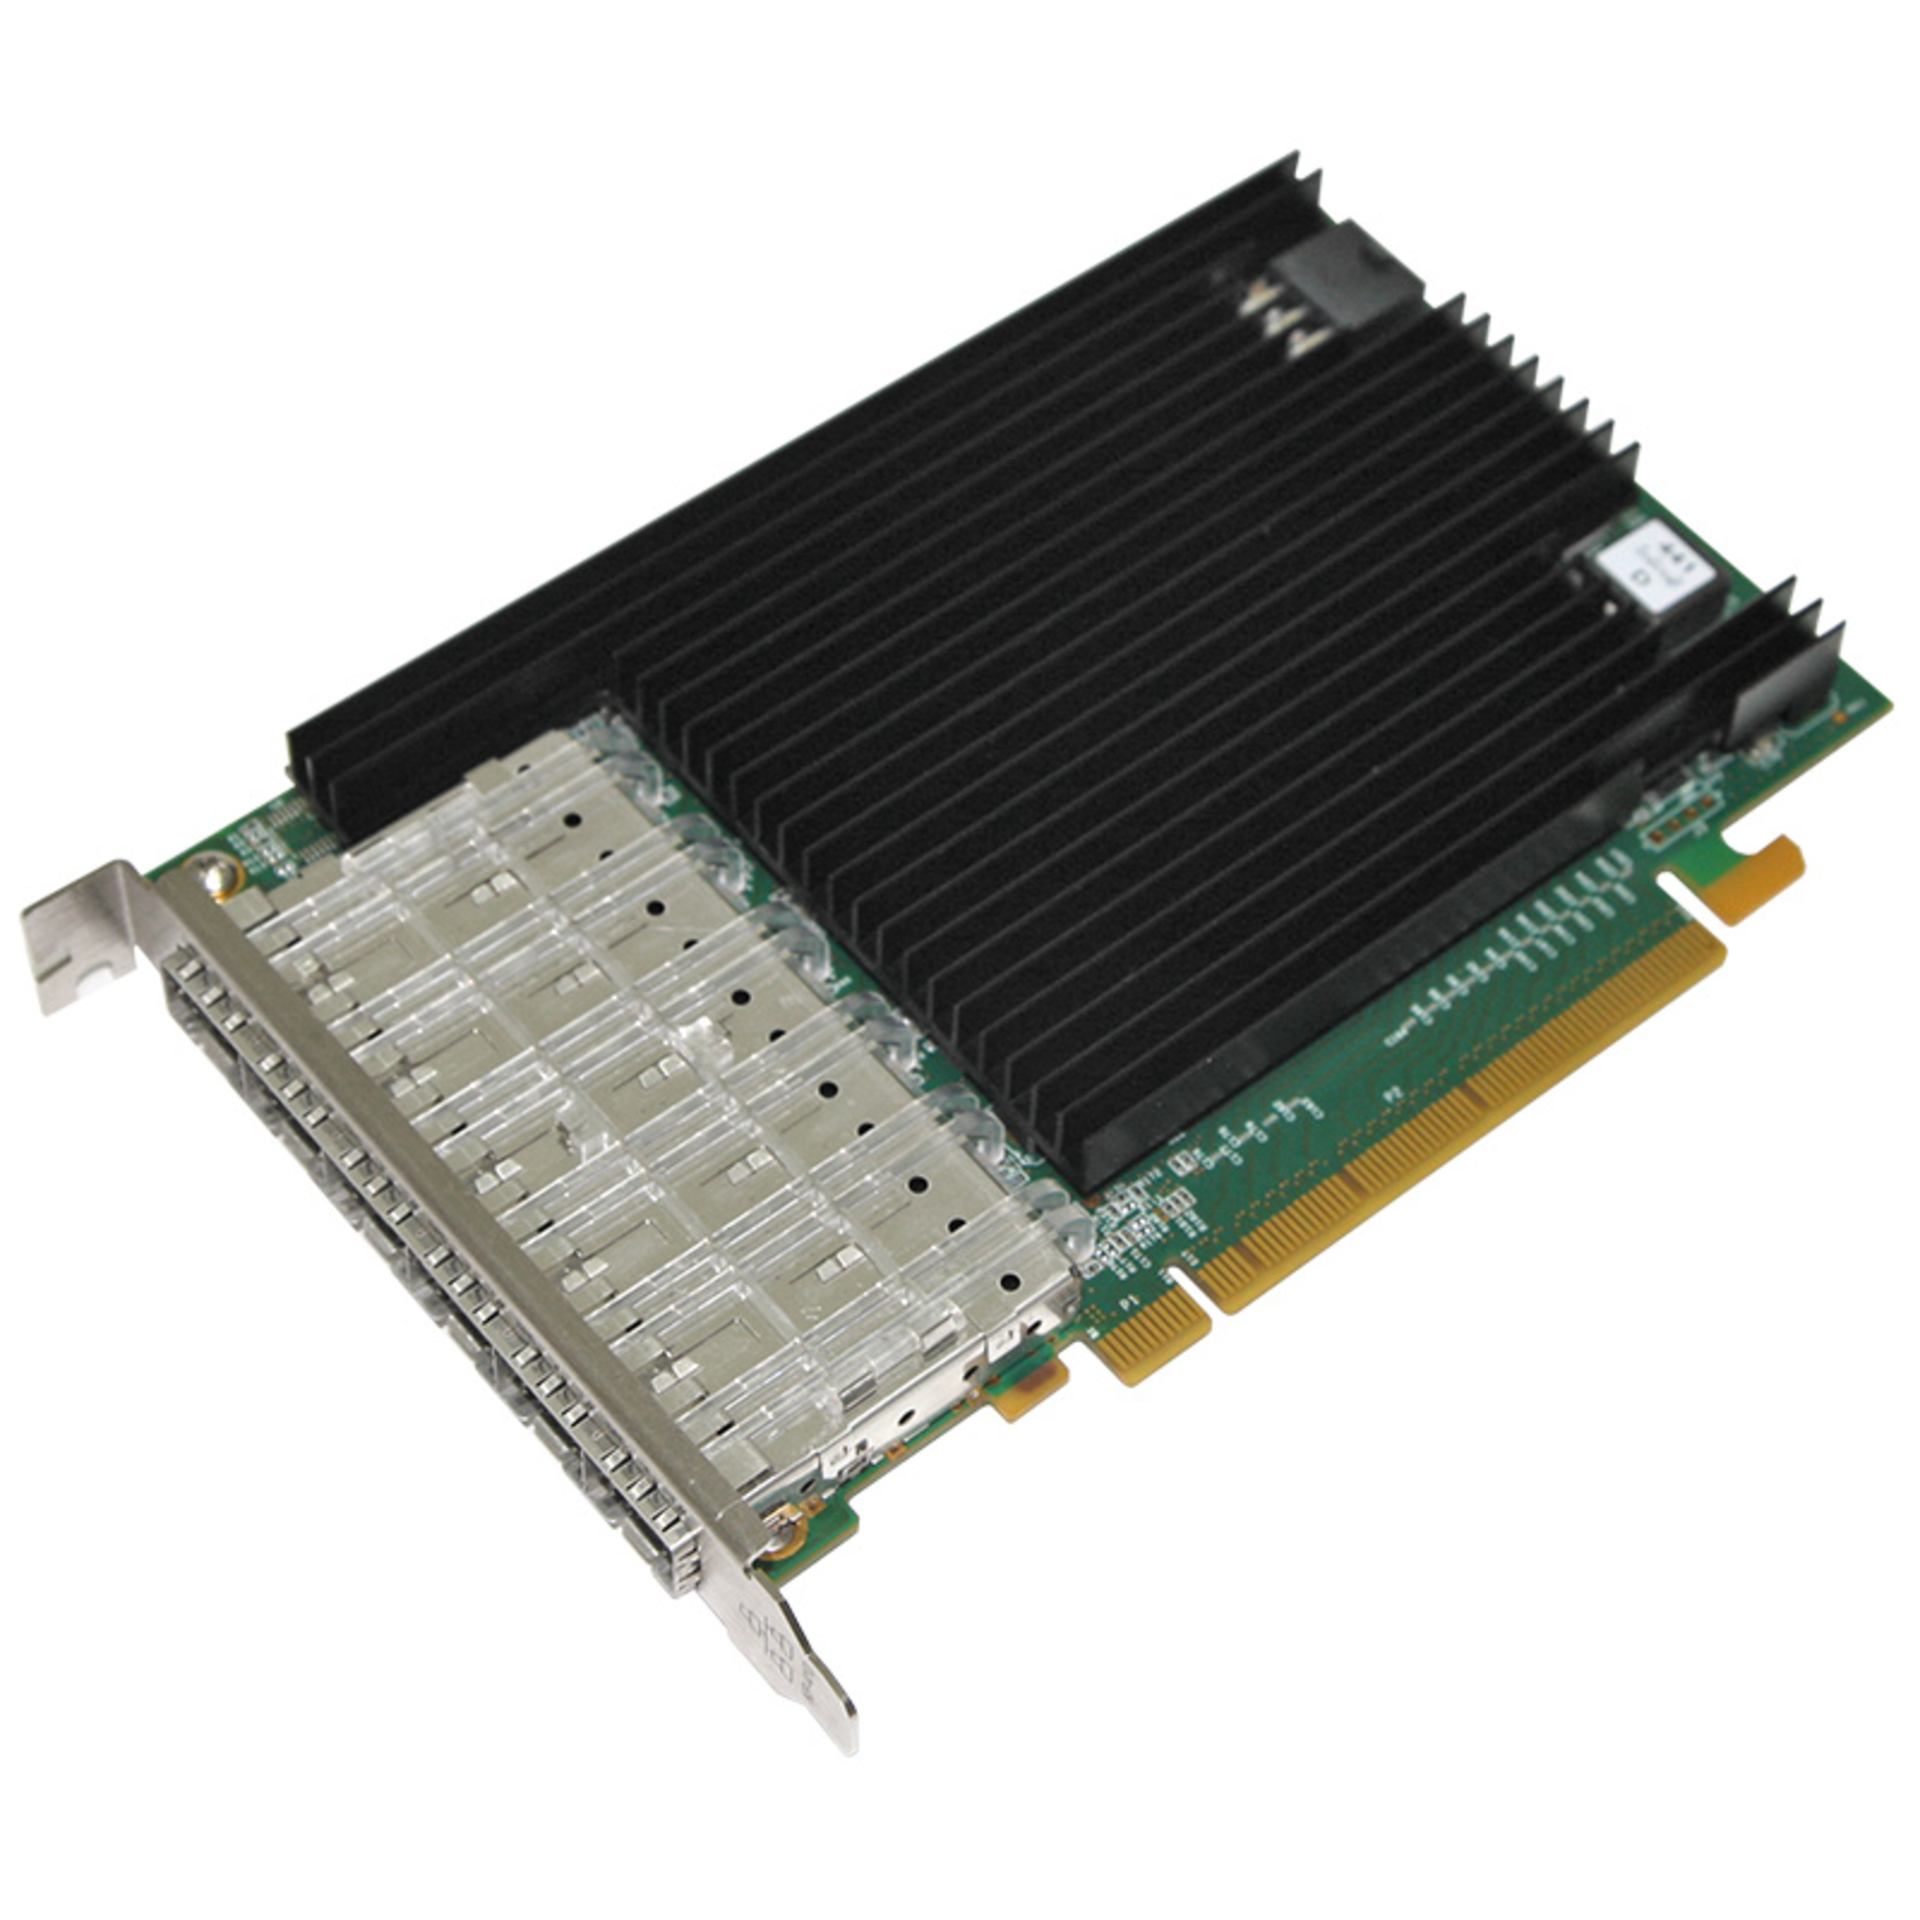 Сетевая карта 6 портов 10GBase-X (SFP+, Intel 82599ES), Silicom PE310G6SPi9-XR